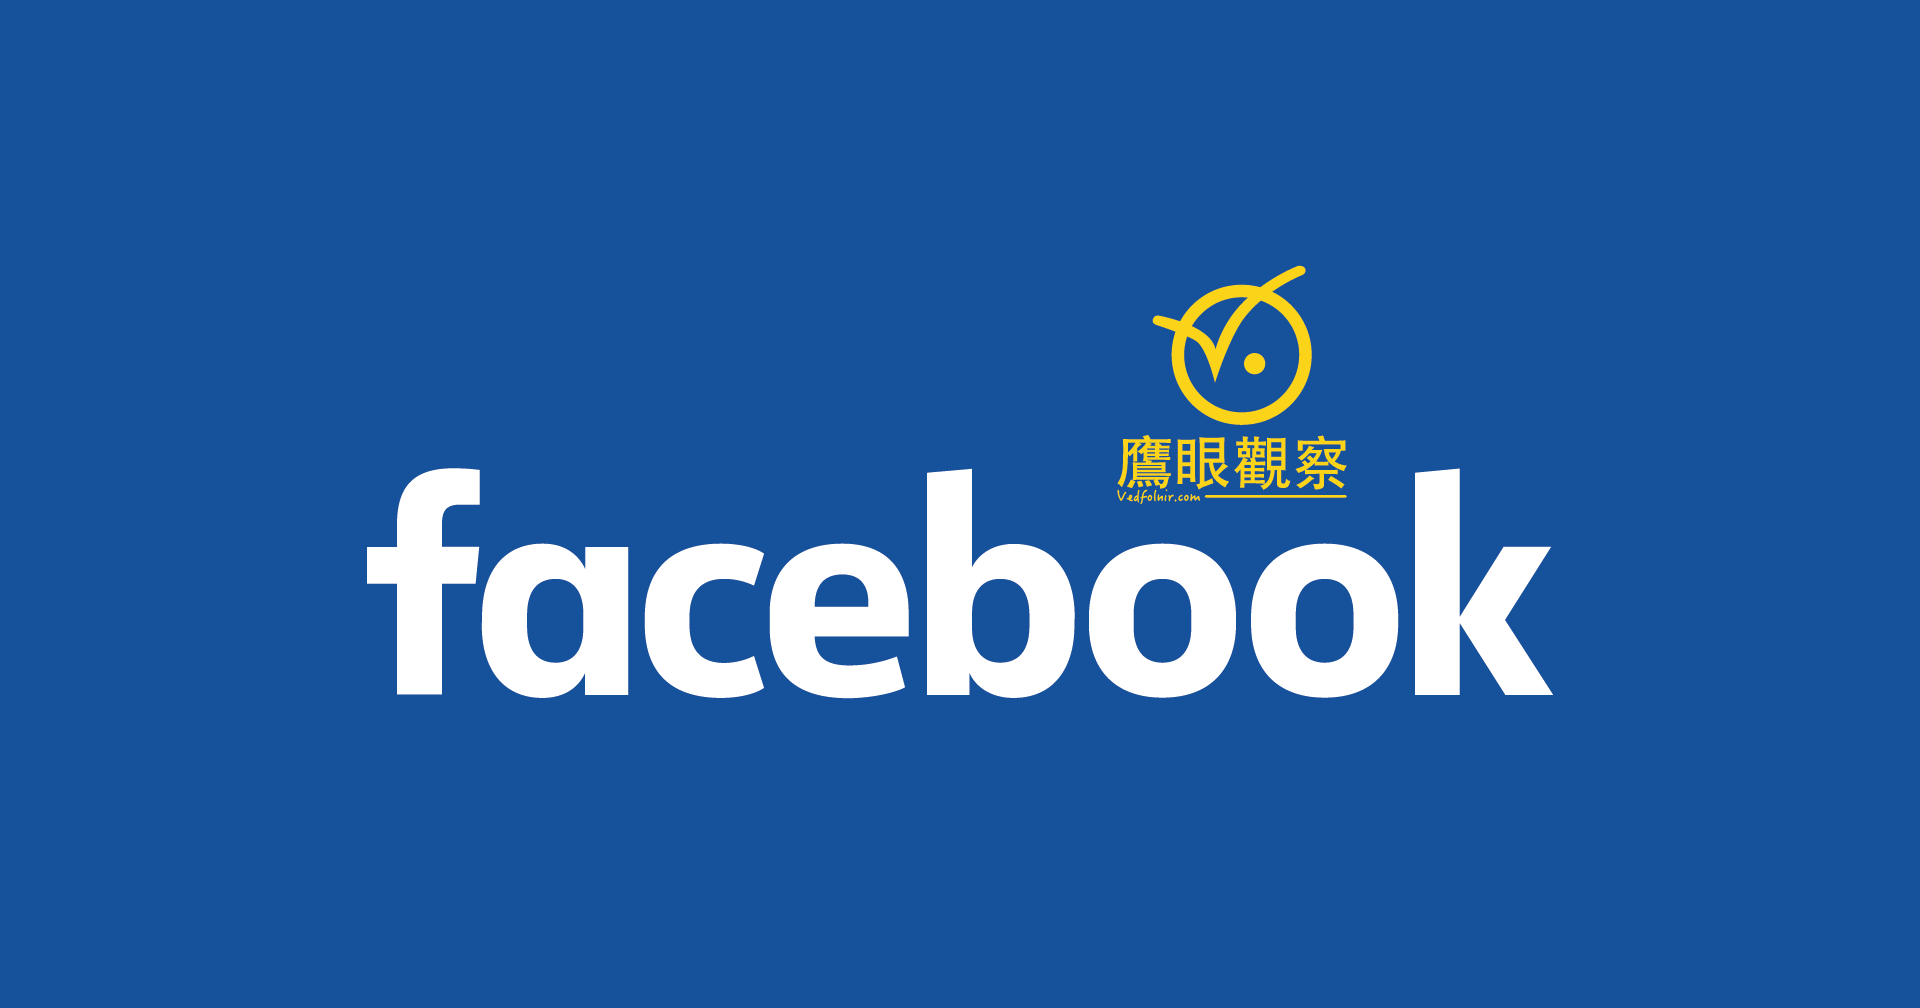 臉書 Facebook 相簿共享服務，分享讓朋友一起上傳照片